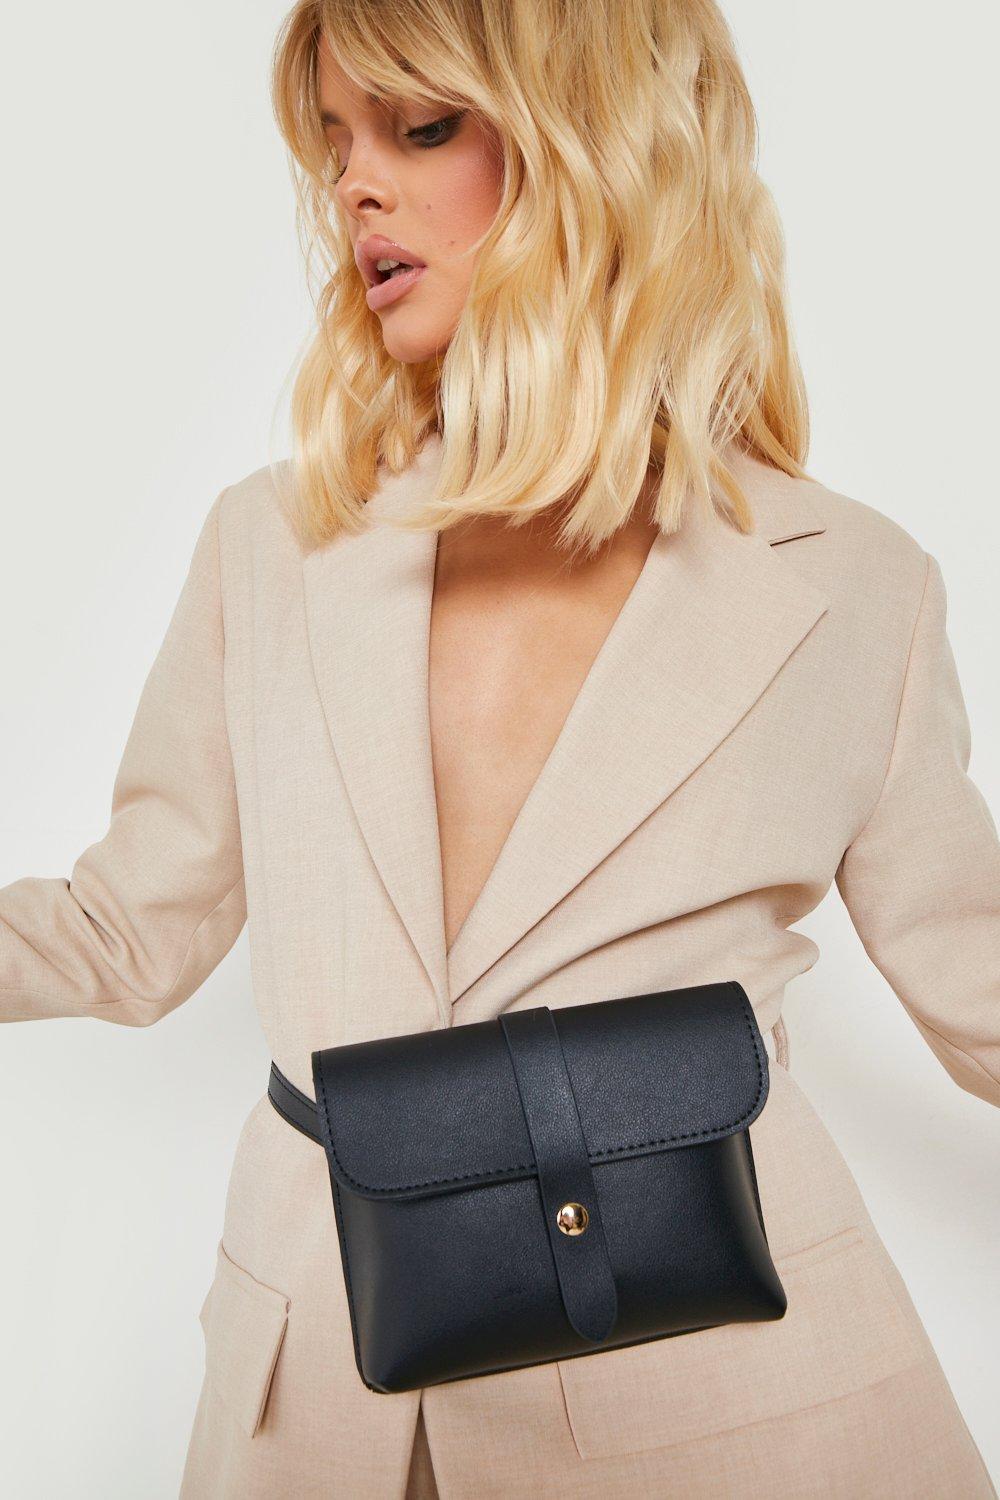 Leather Fanny Pack, Belt Bag, Bum Bag — Blackburn Goods